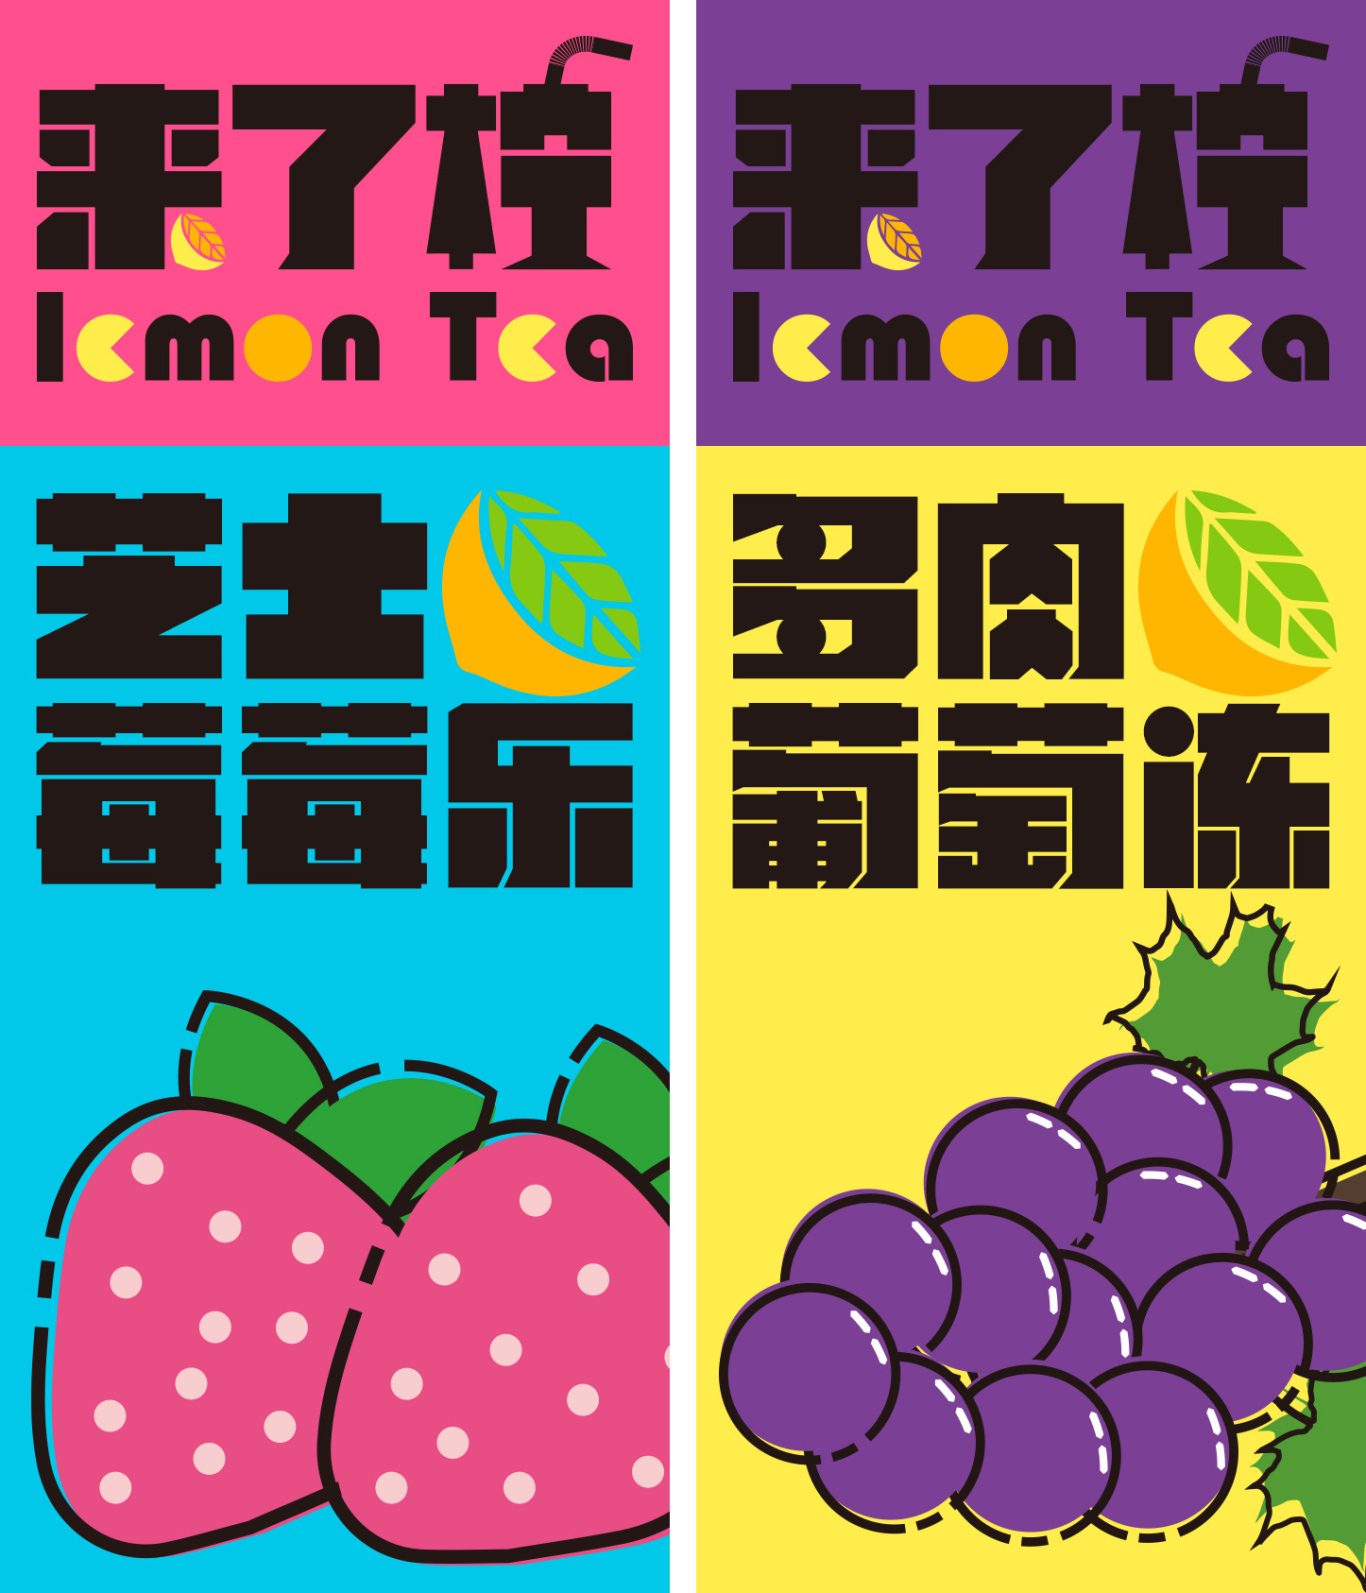 【來了檸】檸檬茶食品/飲品品牌包裝/VI設計全套圖17